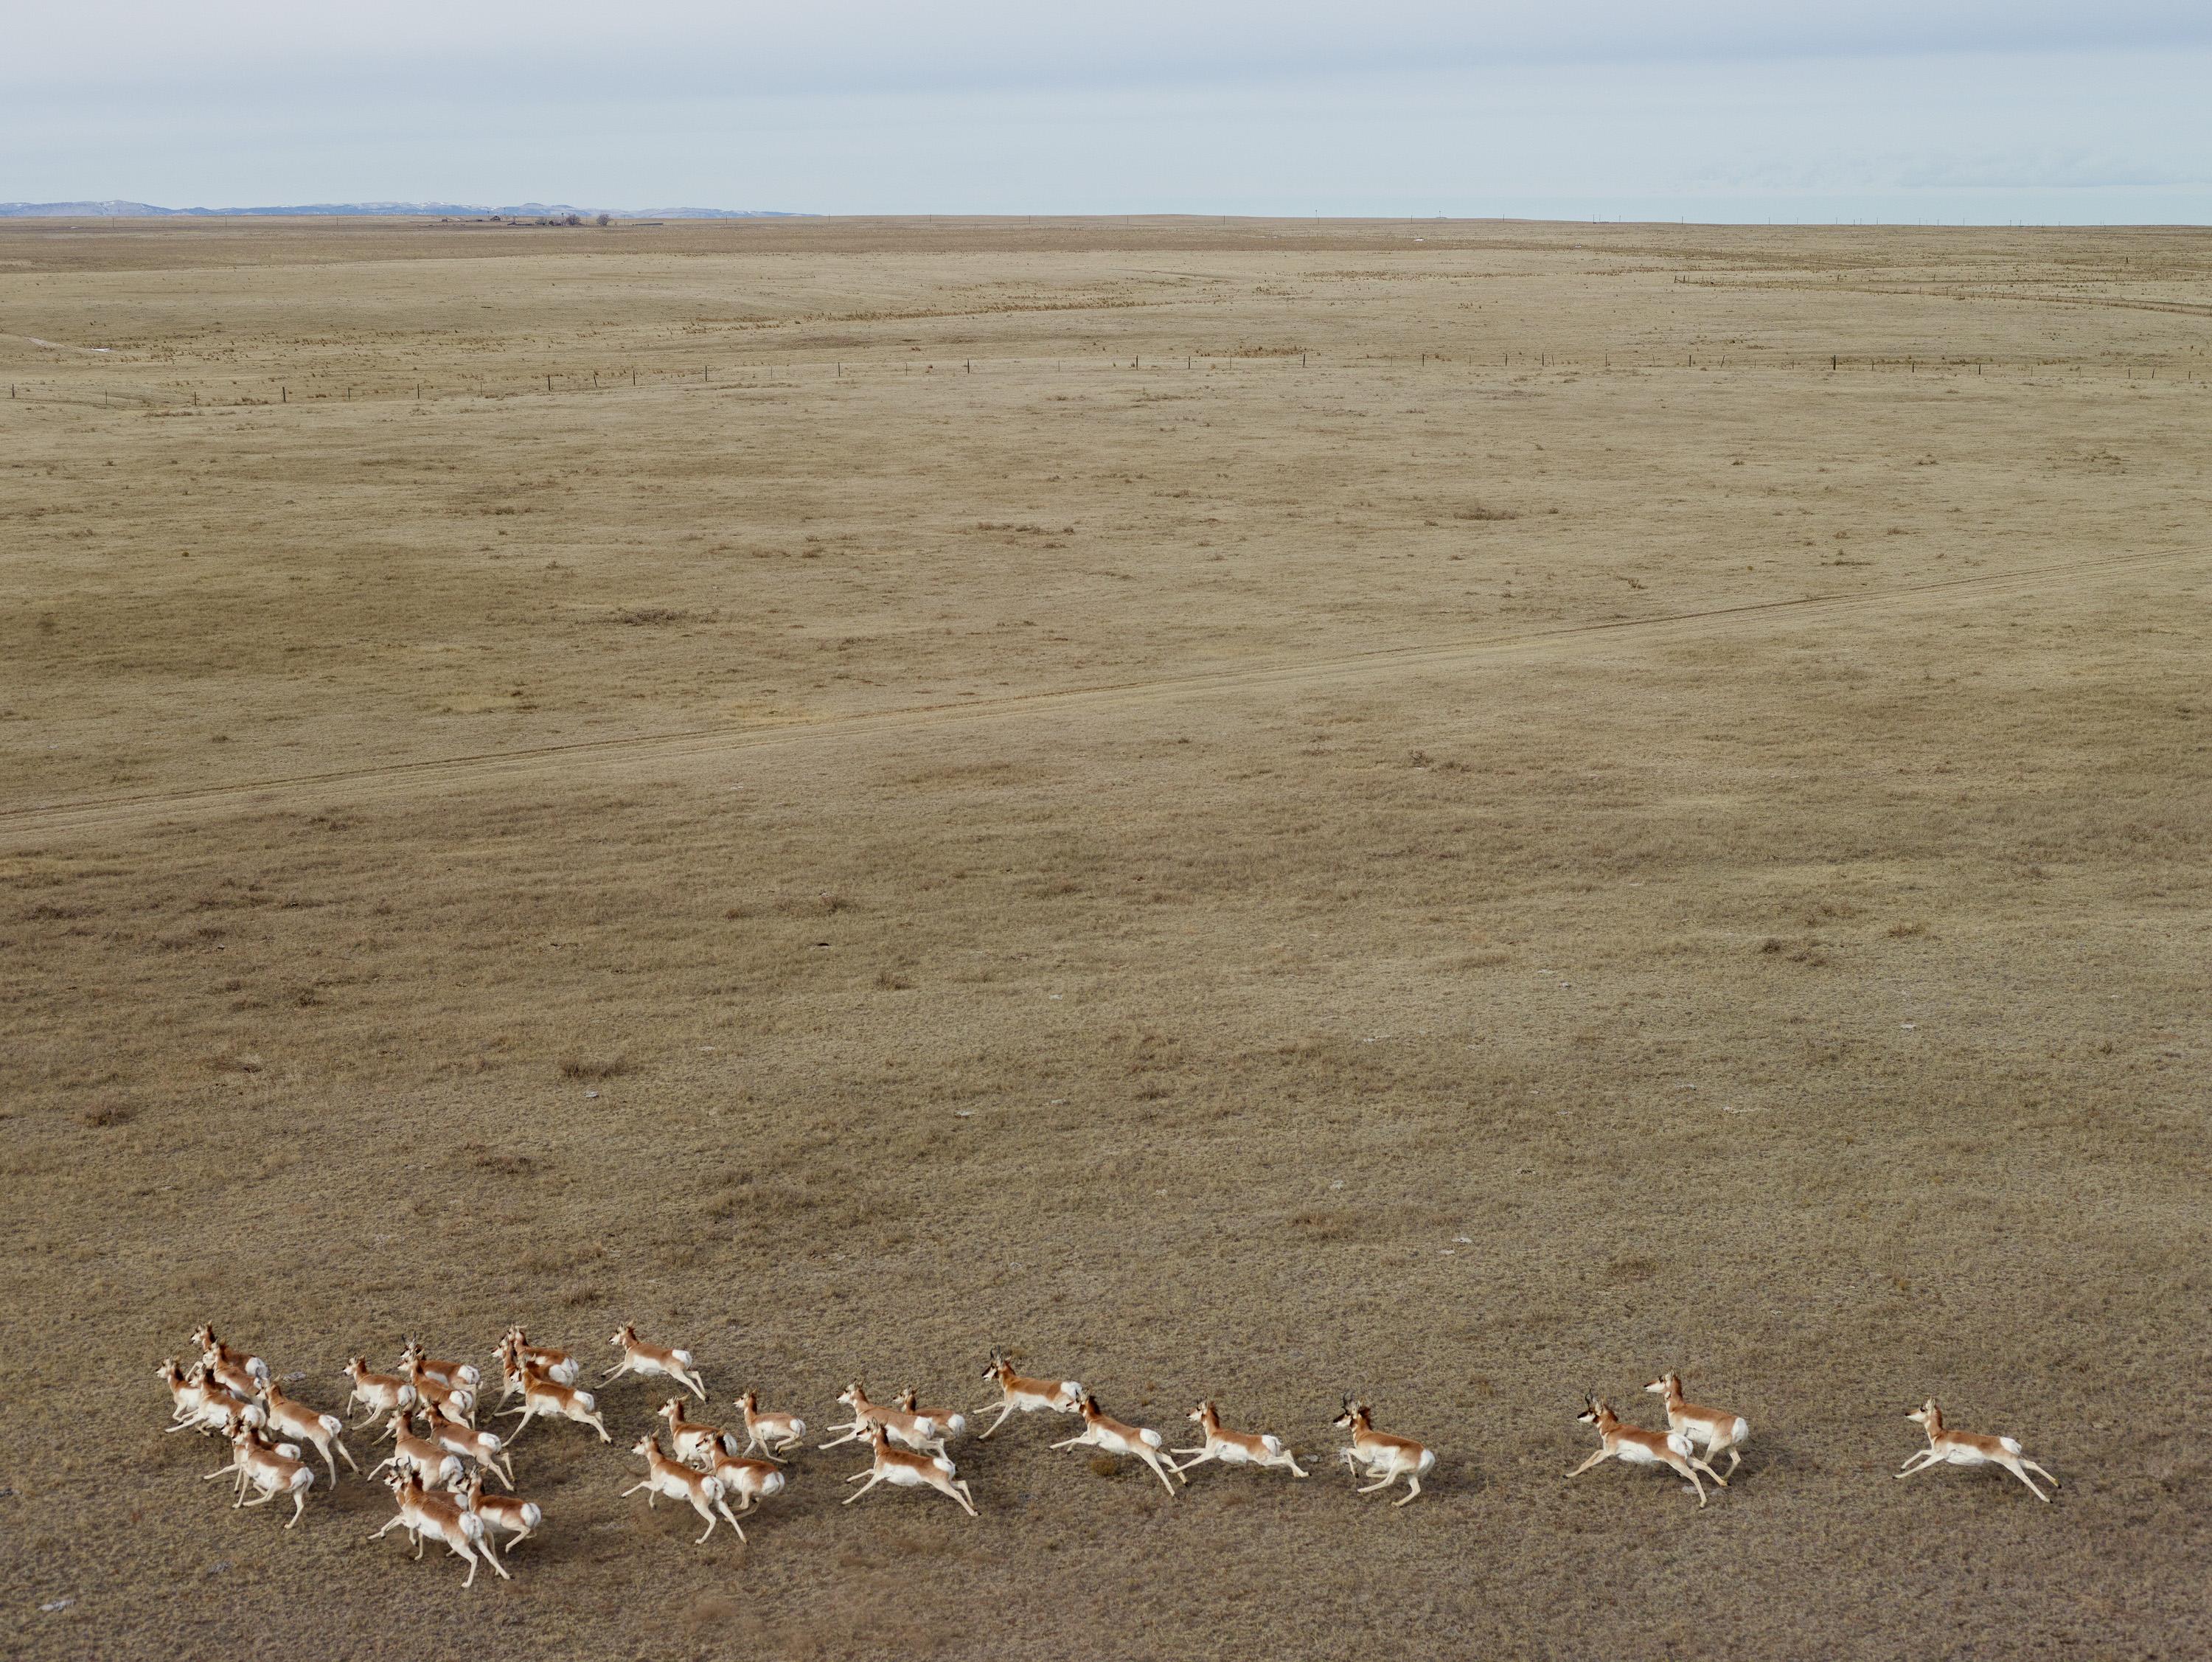 Archivalischer Pigmentdruck

Gabelbock Antilope, Niobrara County, Wyoming, 2013
Eine Herde wilder Antilopen, deren Zahl im Winter in die Hunderte gehen kann, durchstreift die Hochebene, die sich im Hintergrund bis zu den Big Horn Mountains